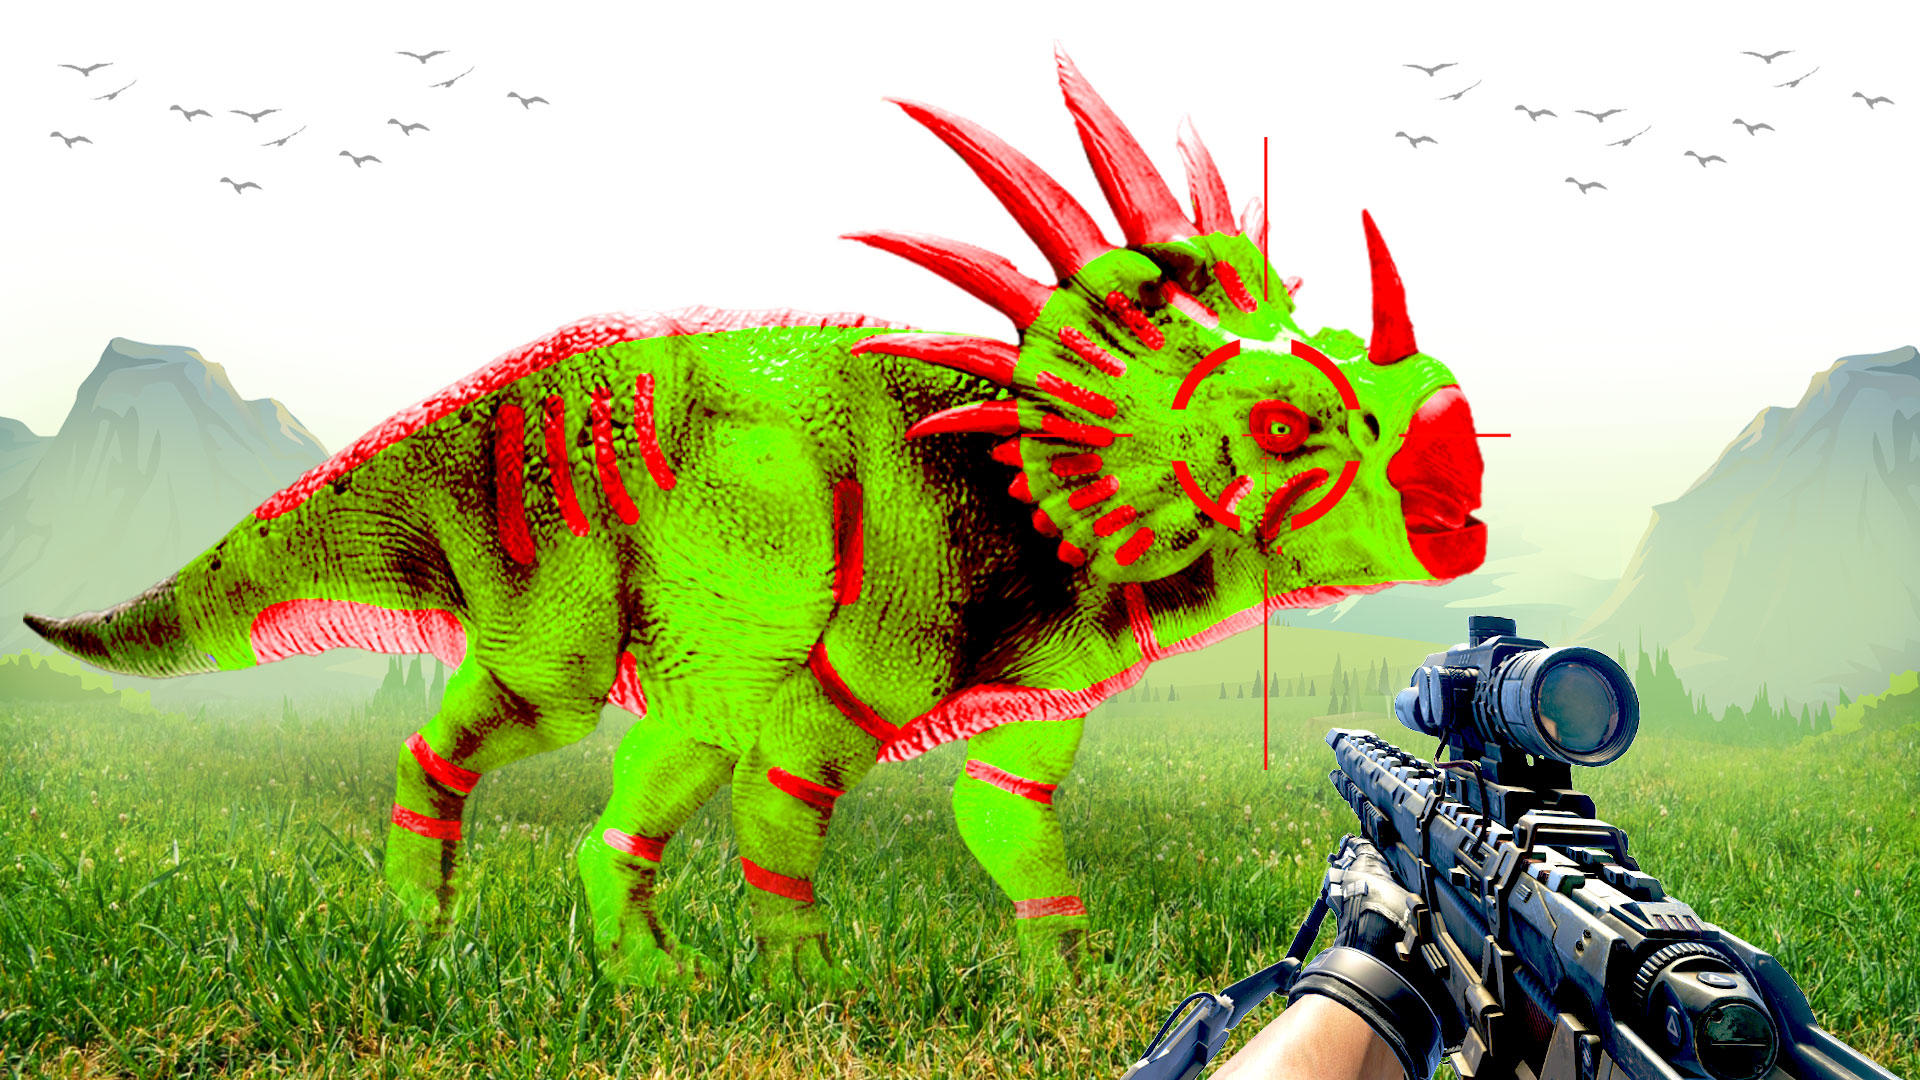 Wild Dino Gun Hunting Game FPS screenshot game